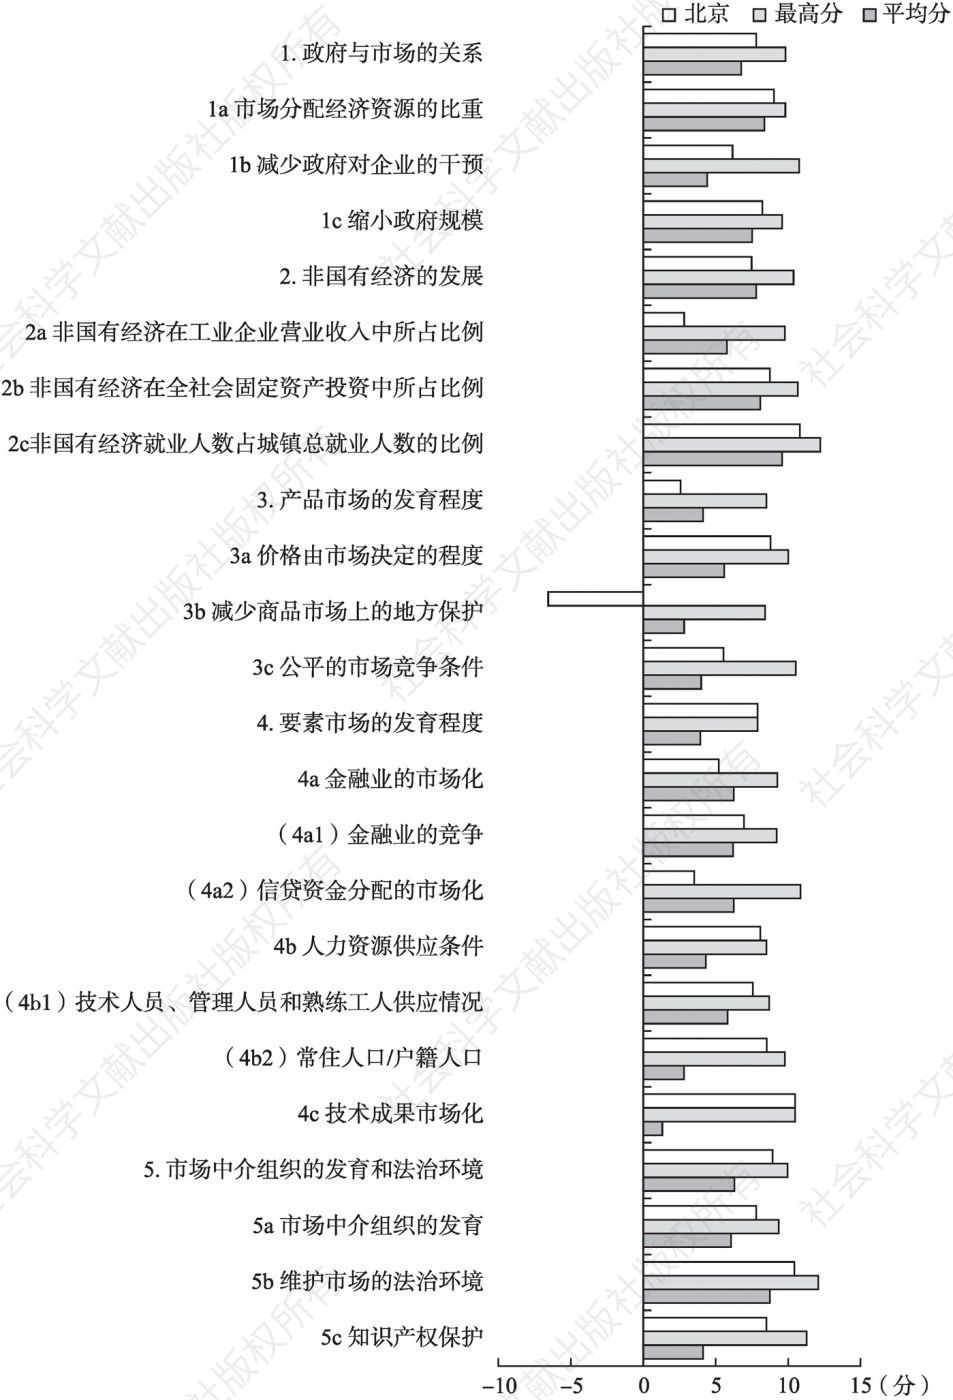 2019年北京市场化各方面指数和分项指数与全国最高分及平均分的比较